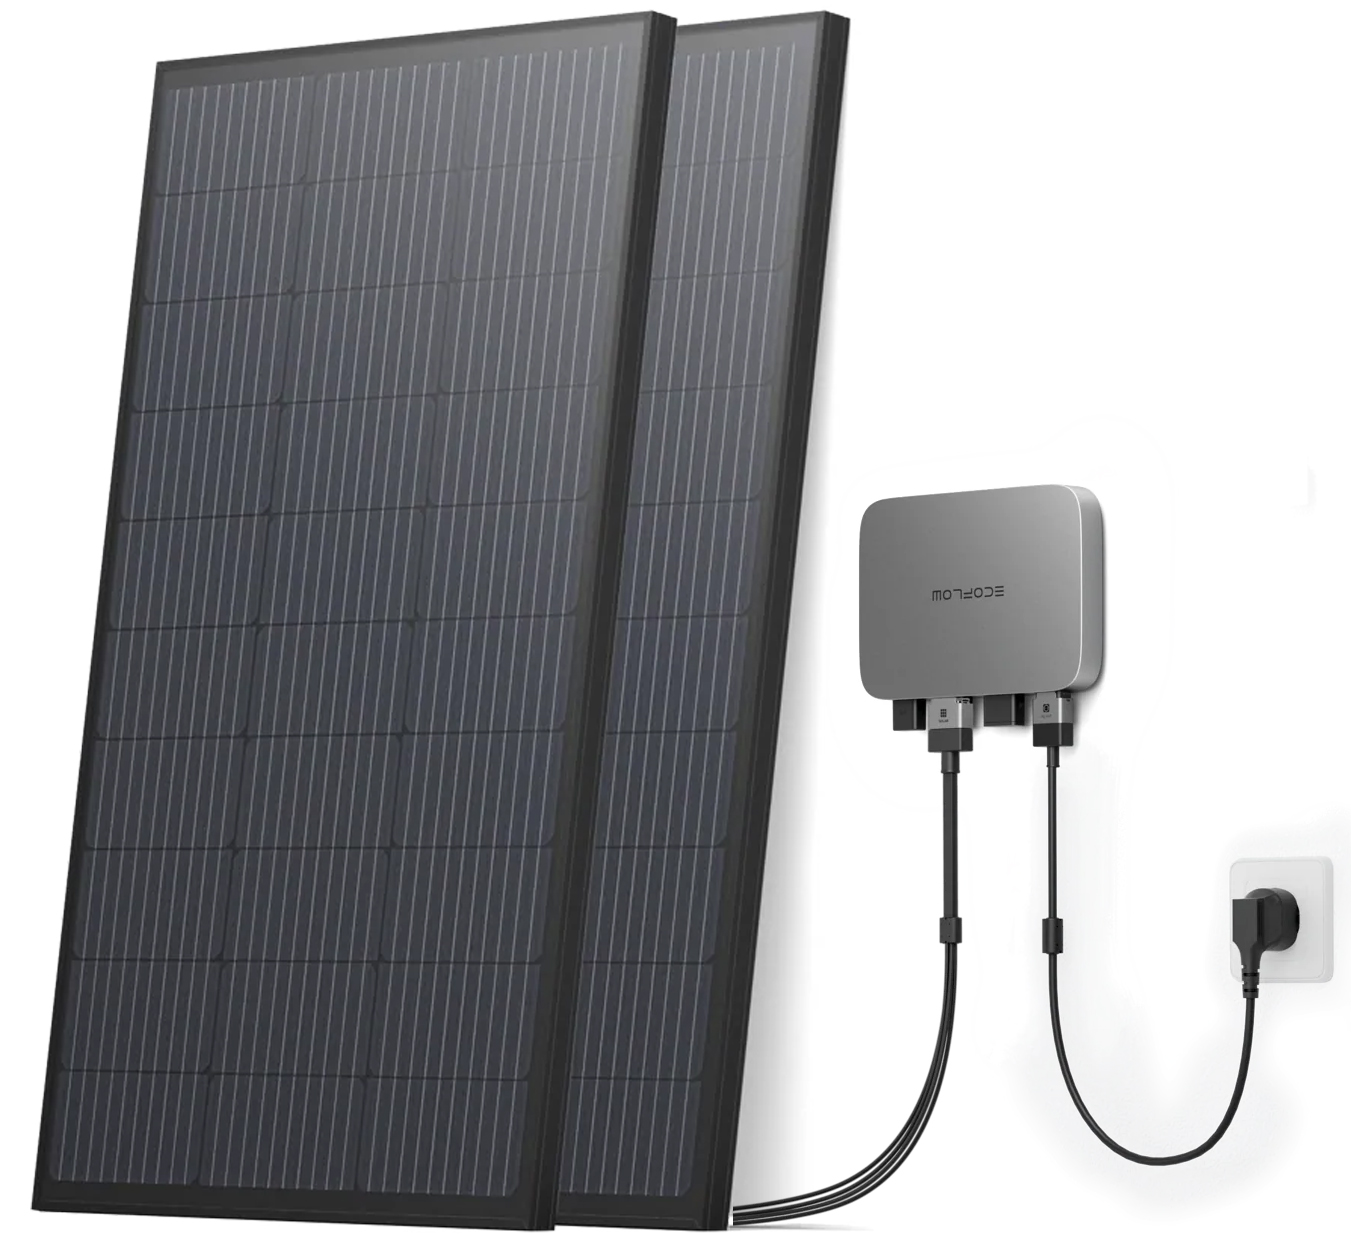 Система резервного живлення для квартири EcoFlow PowerStream - микроинвертор 800W + 2 x 400W стационарные солнечные панели